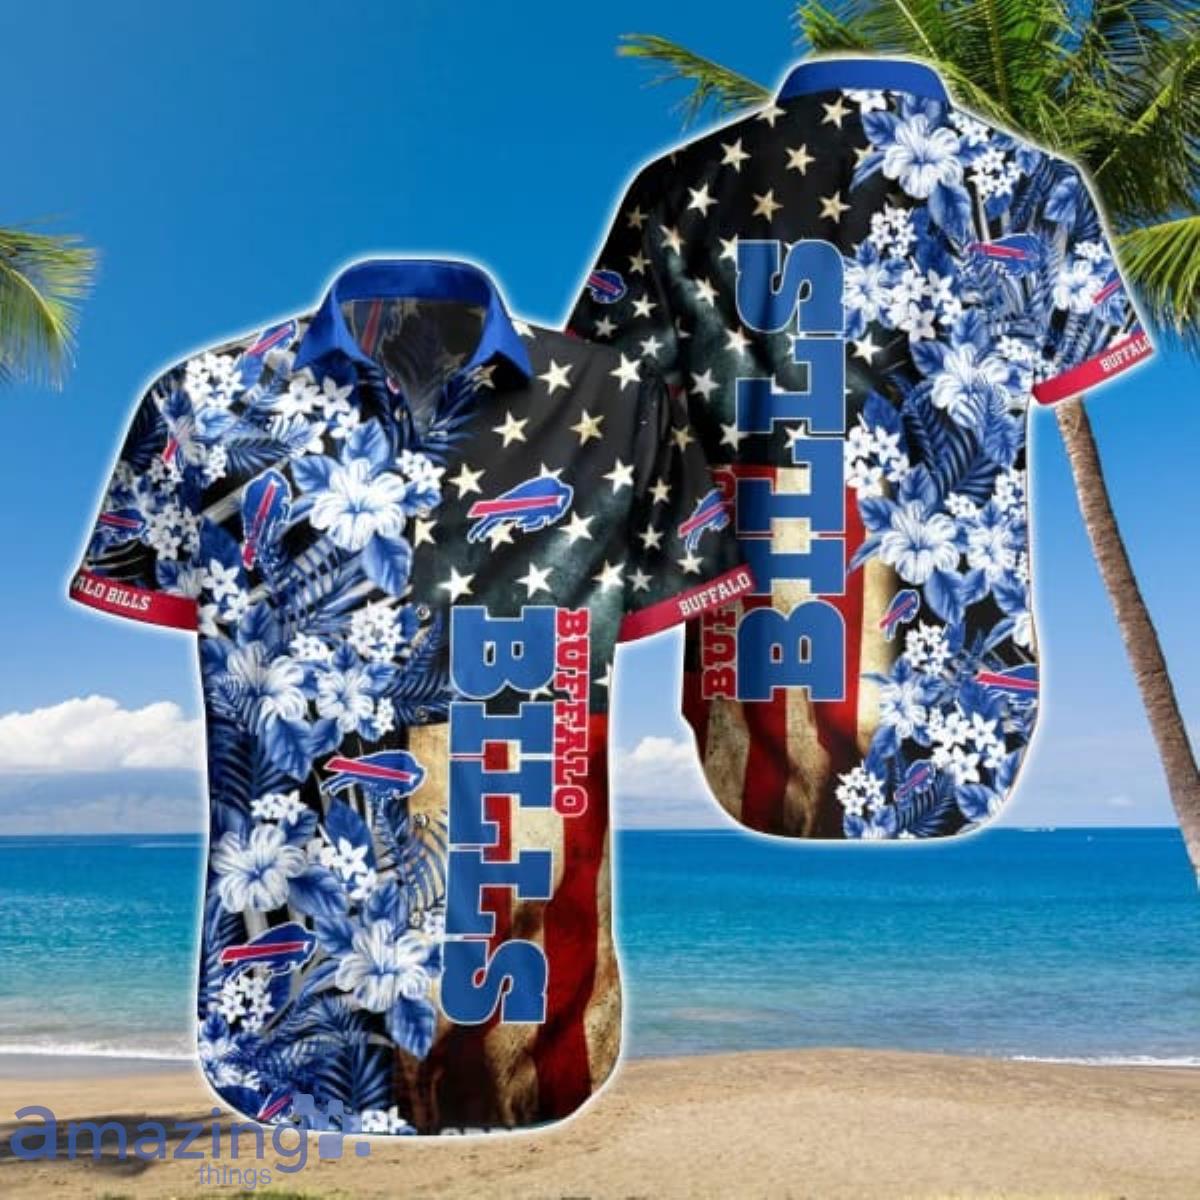 NFL Buffalo Bills Hawaiian Shirt Tropical Flower Best Gift For Men